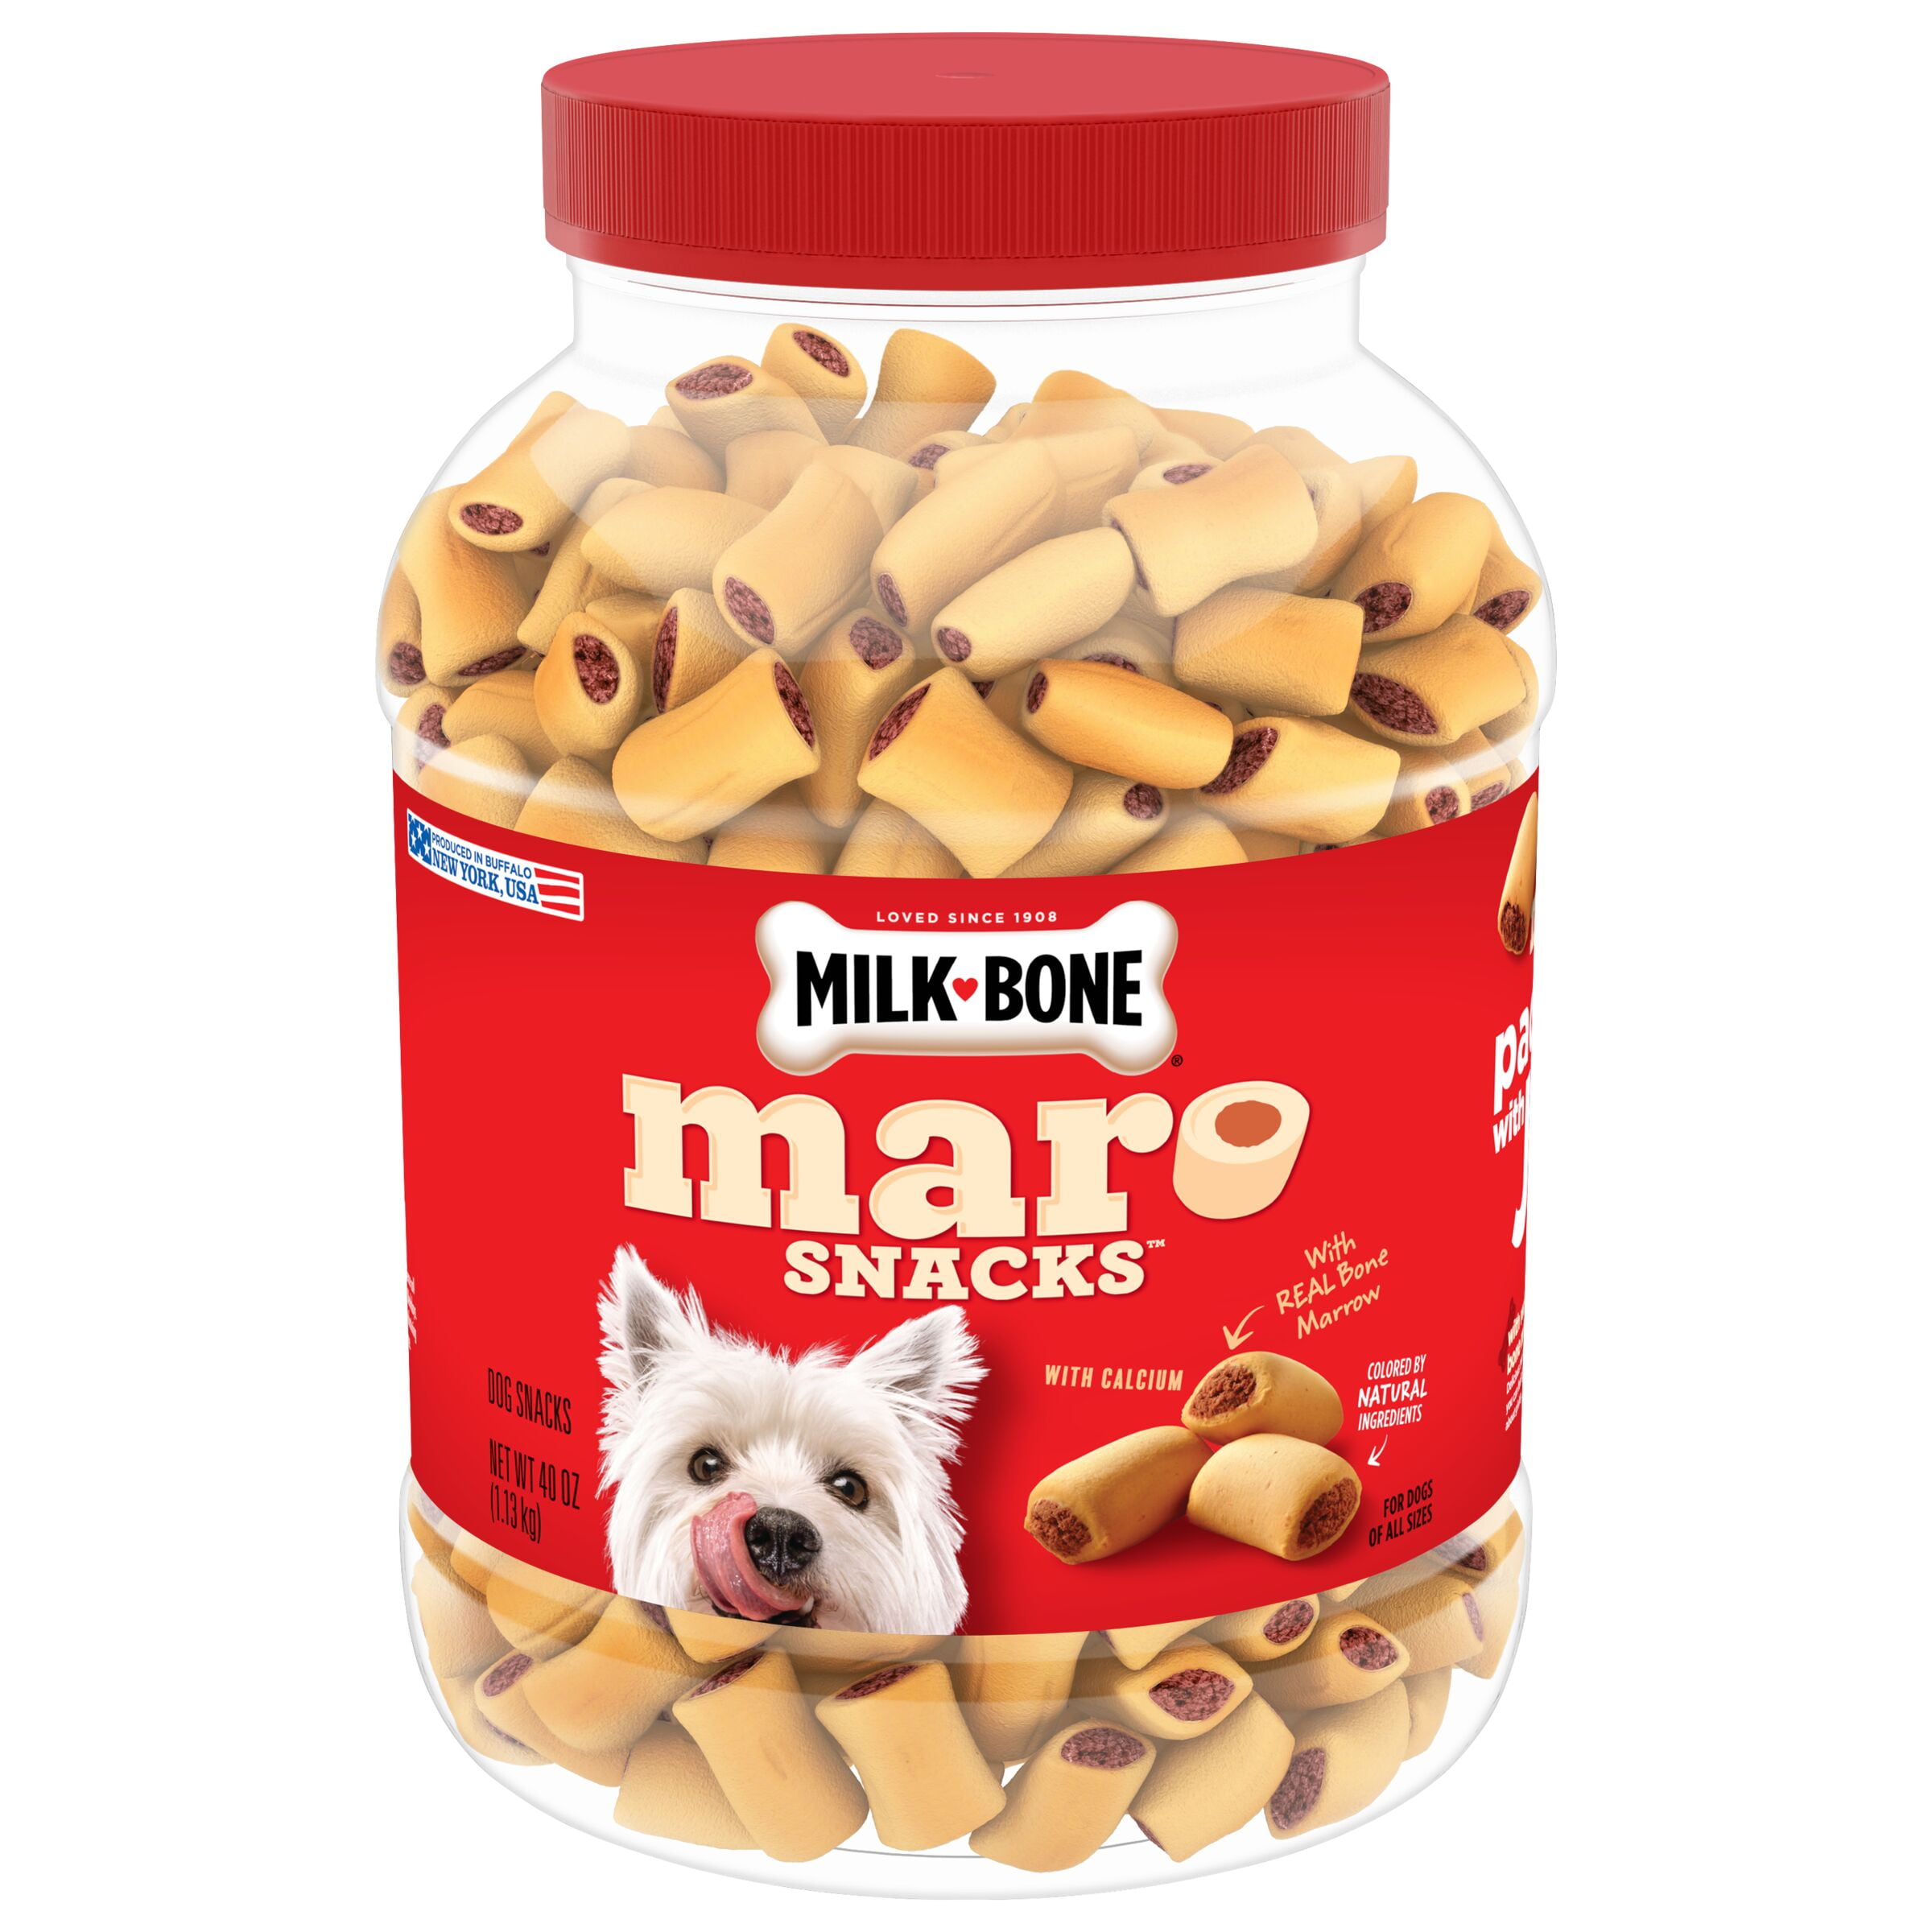 Milk-Bone MaroSnacks Small Dog Treats With Bone Marrow, 40 oz.